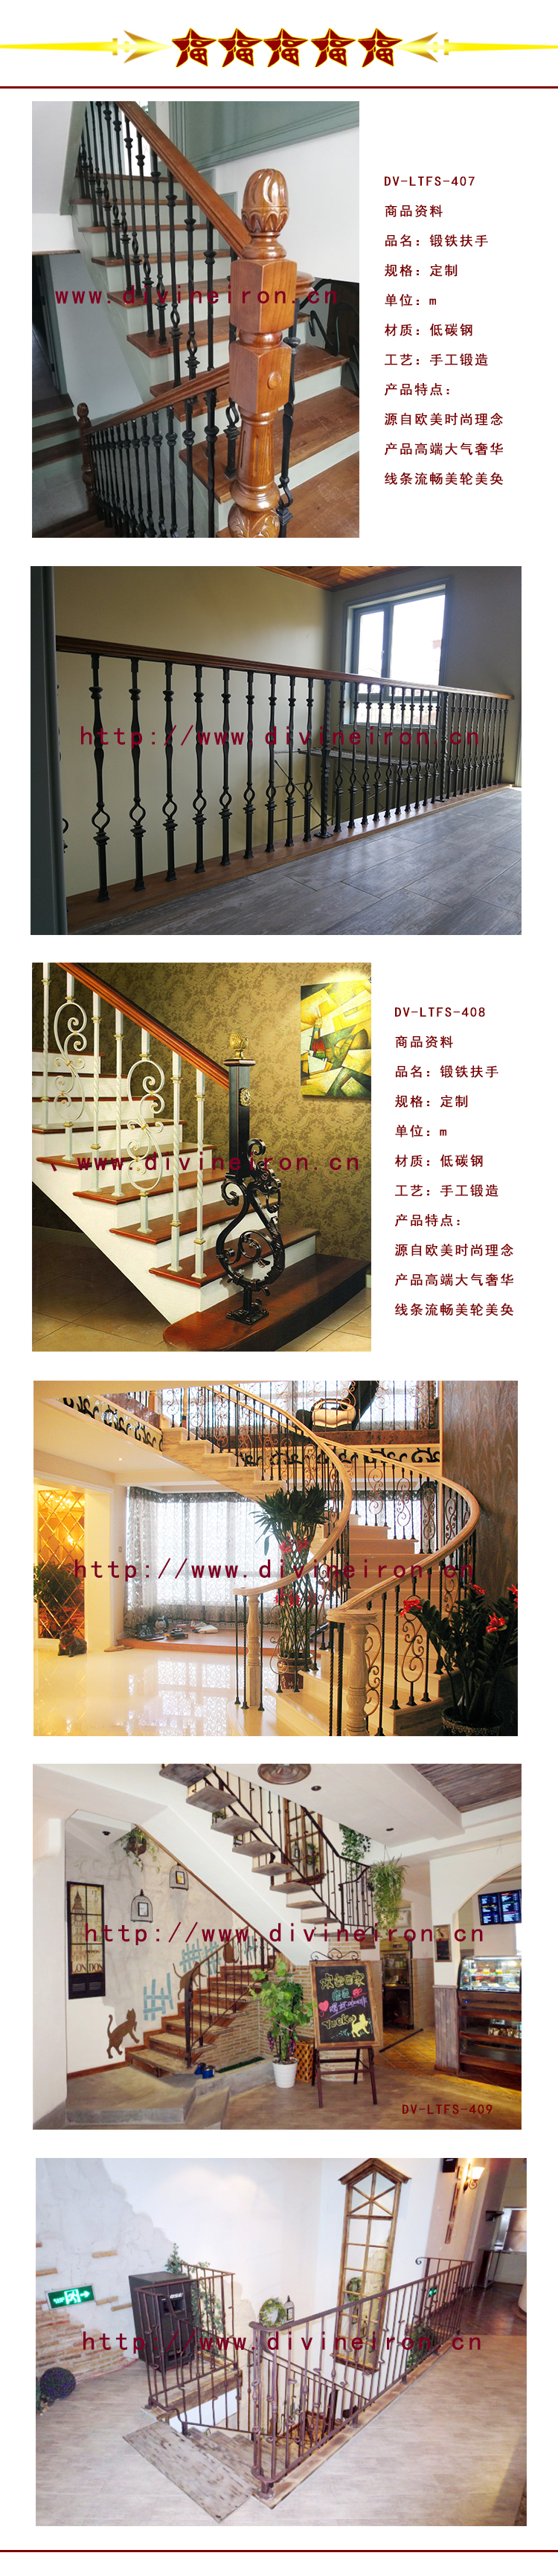 樓梯扶手詳圖1-3.jpg